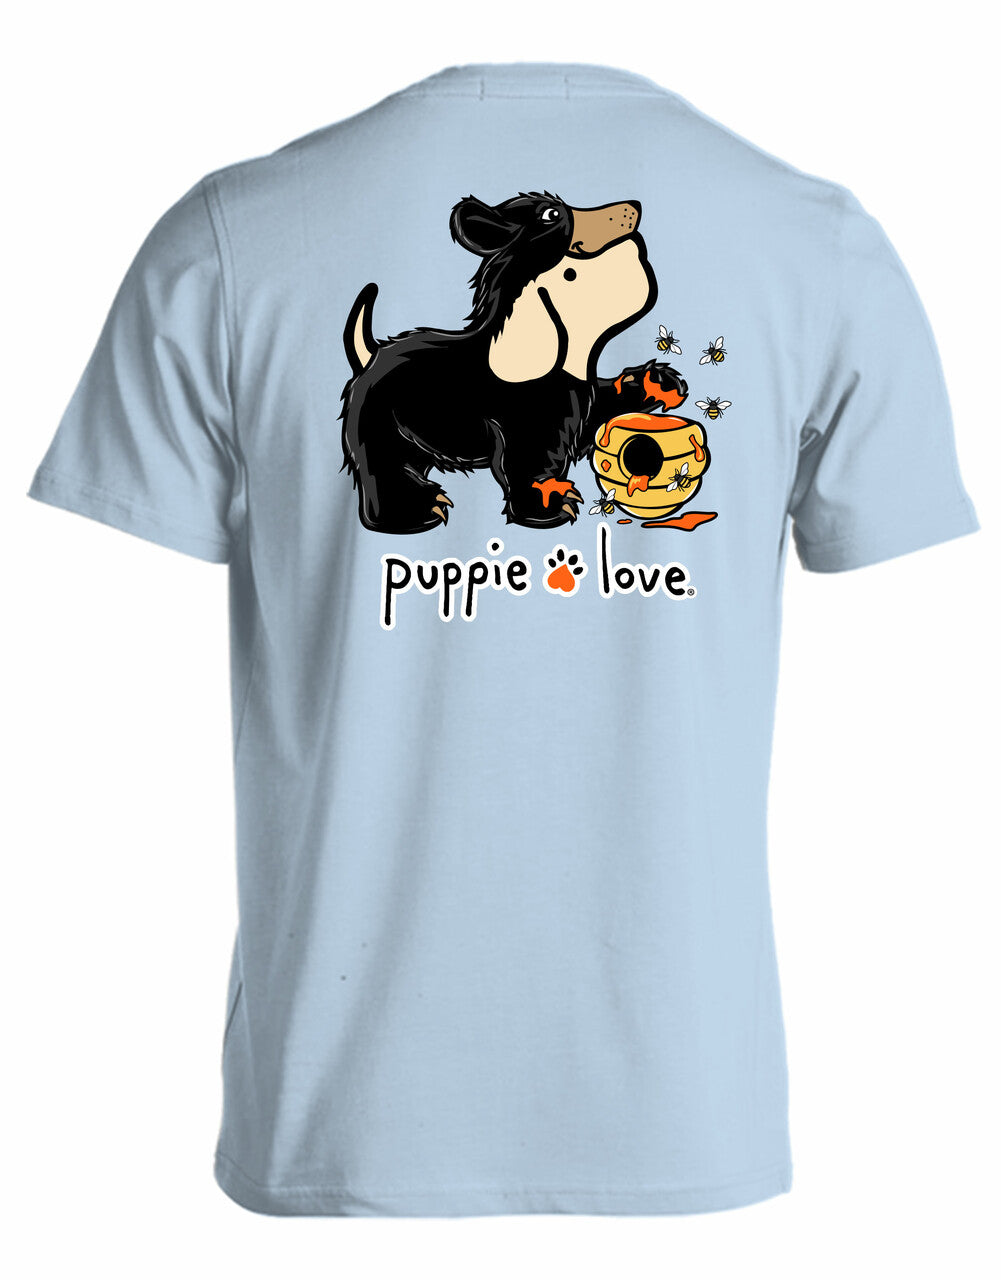 Black Bear Pup Short Sleeve By Puppie Love (Pre-Order 2-3 Weeks)